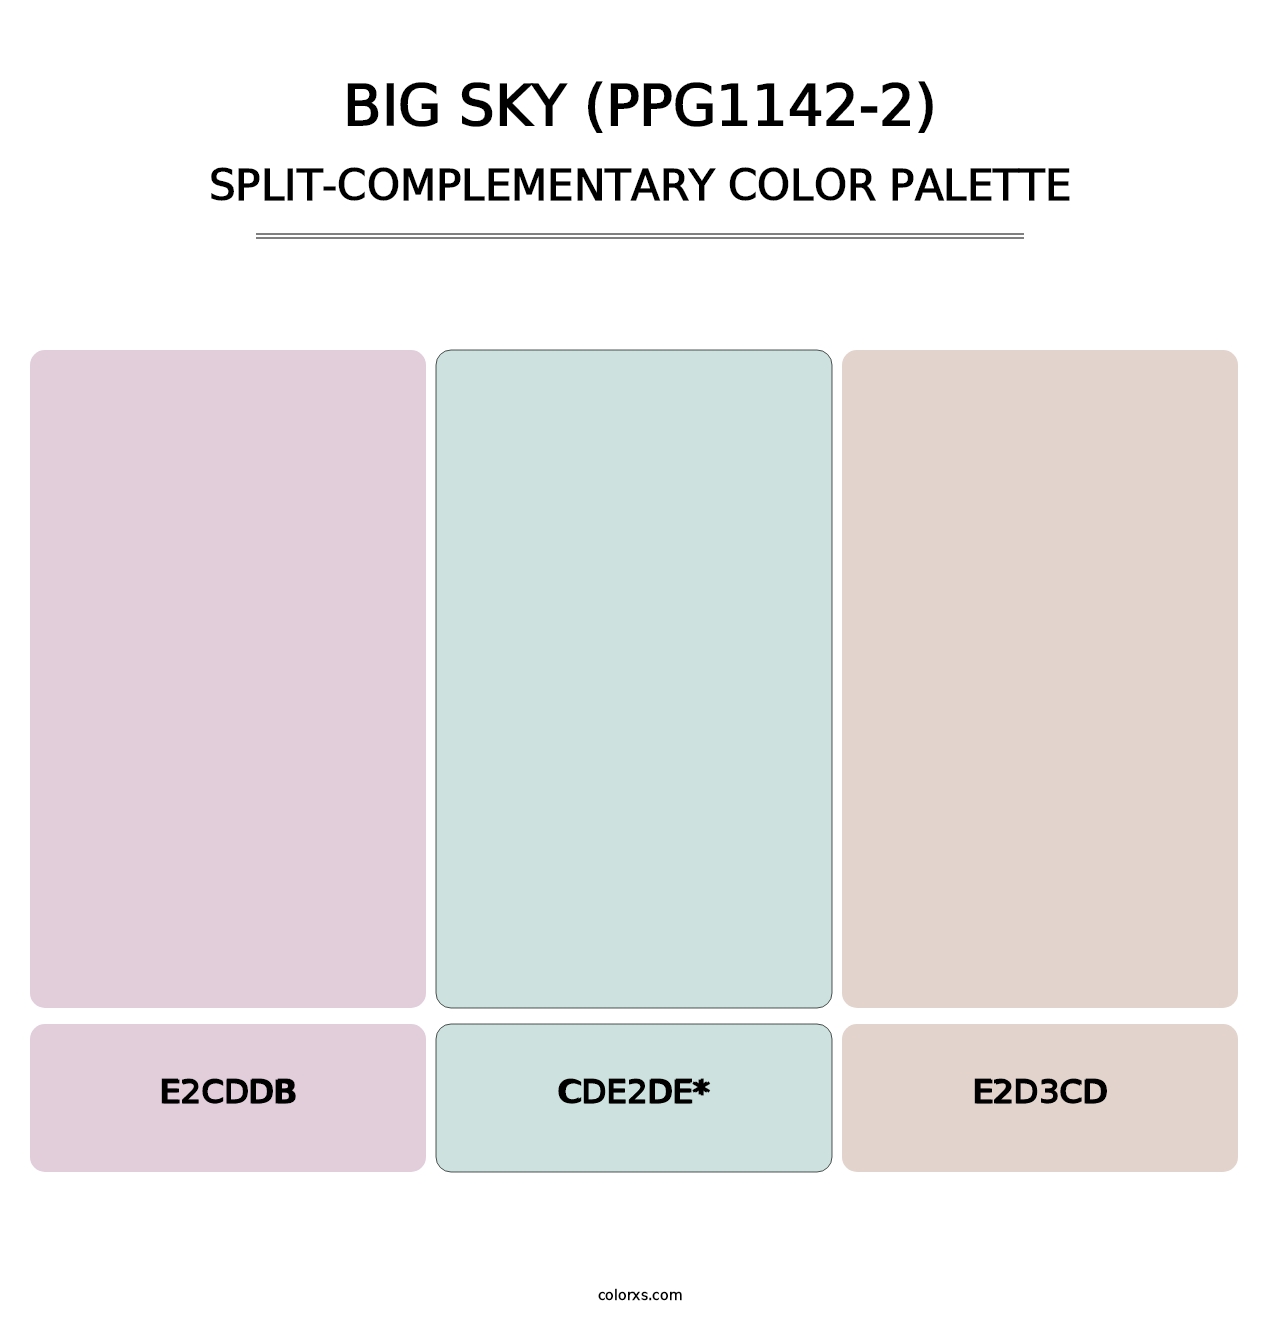 Big Sky (PPG1142-2) - Split-Complementary Color Palette